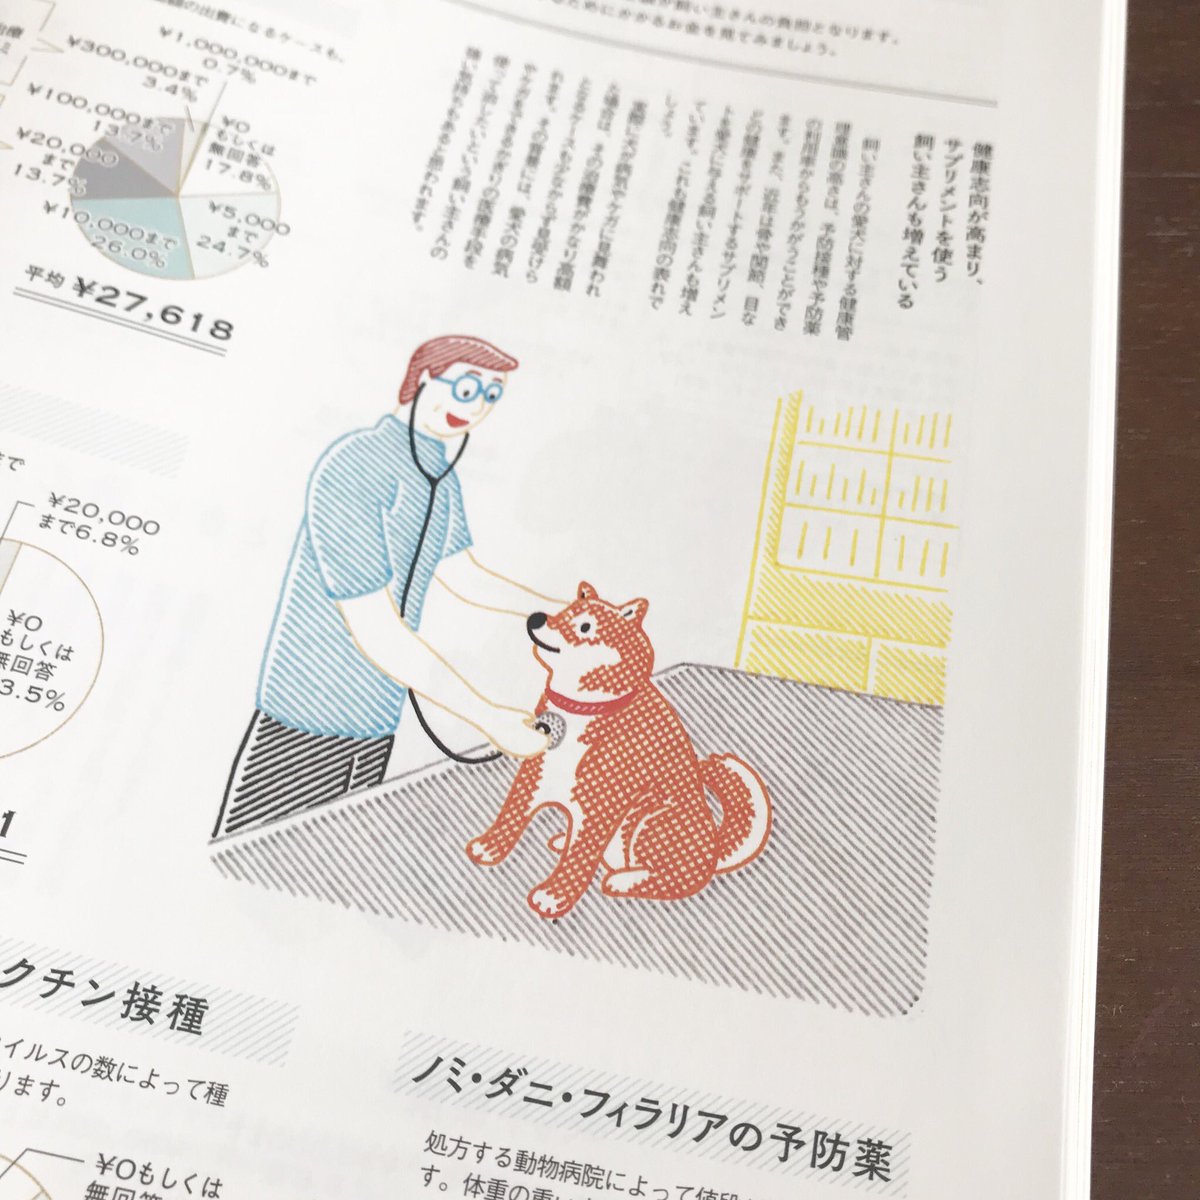 雑誌「いぬのきもち」10月号(ベネッセコーポレーション)犬とお金についての絵を描きました。ありがとうございました。 